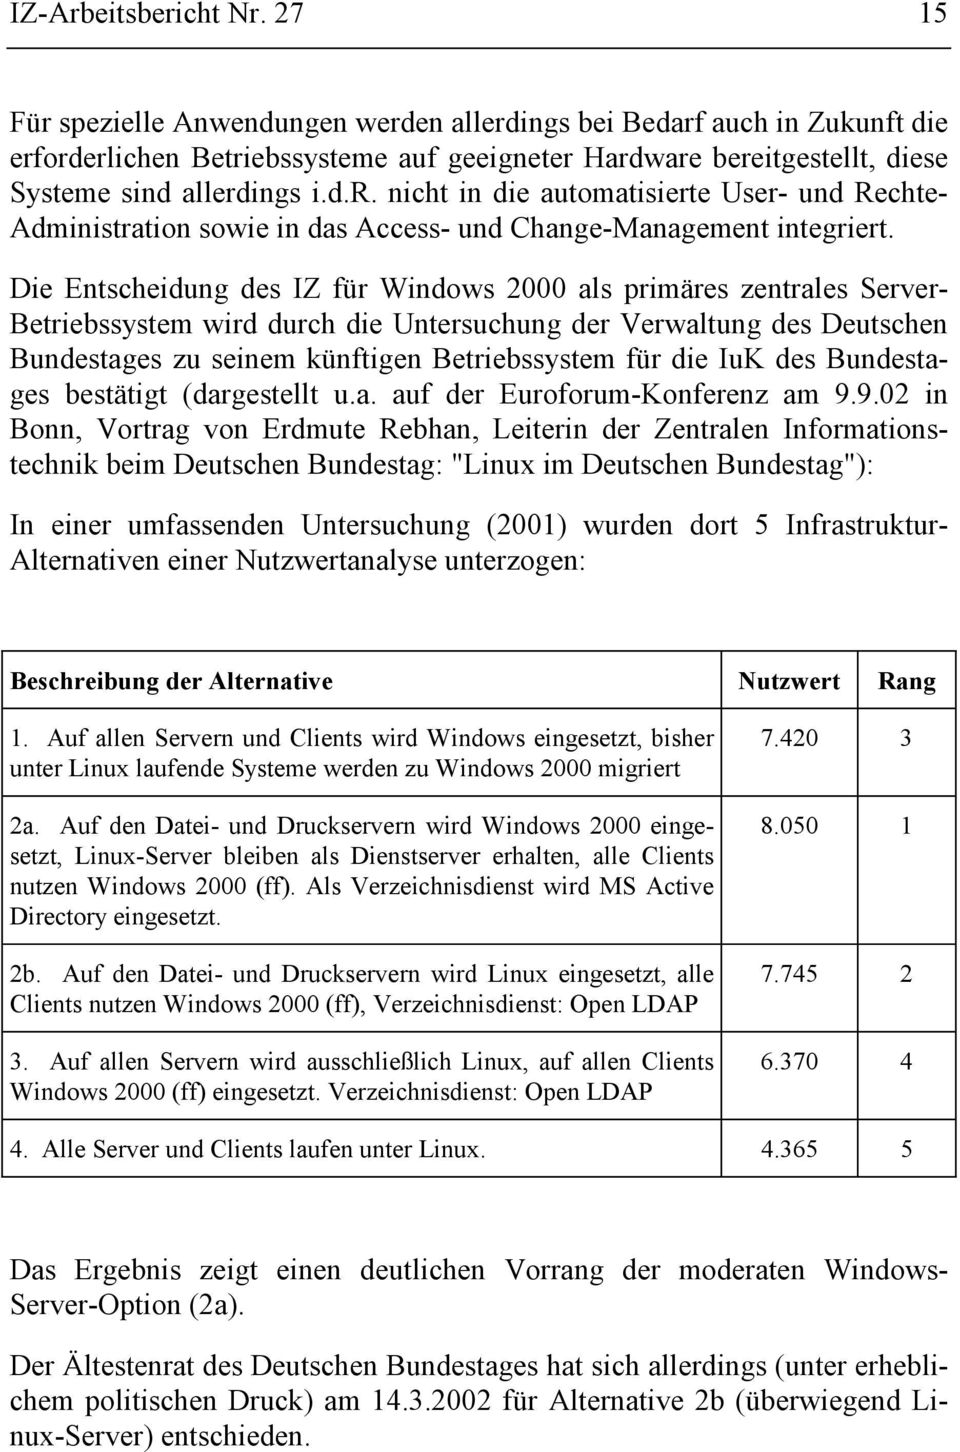 Die Entscheidung des IZ für Windows 2000 als primäres zentrales Server- Betriebssystem wird durch die Untersuchung der Verwaltung des Deutschen Bundestages zu seinem künftigen Betriebssystem für die